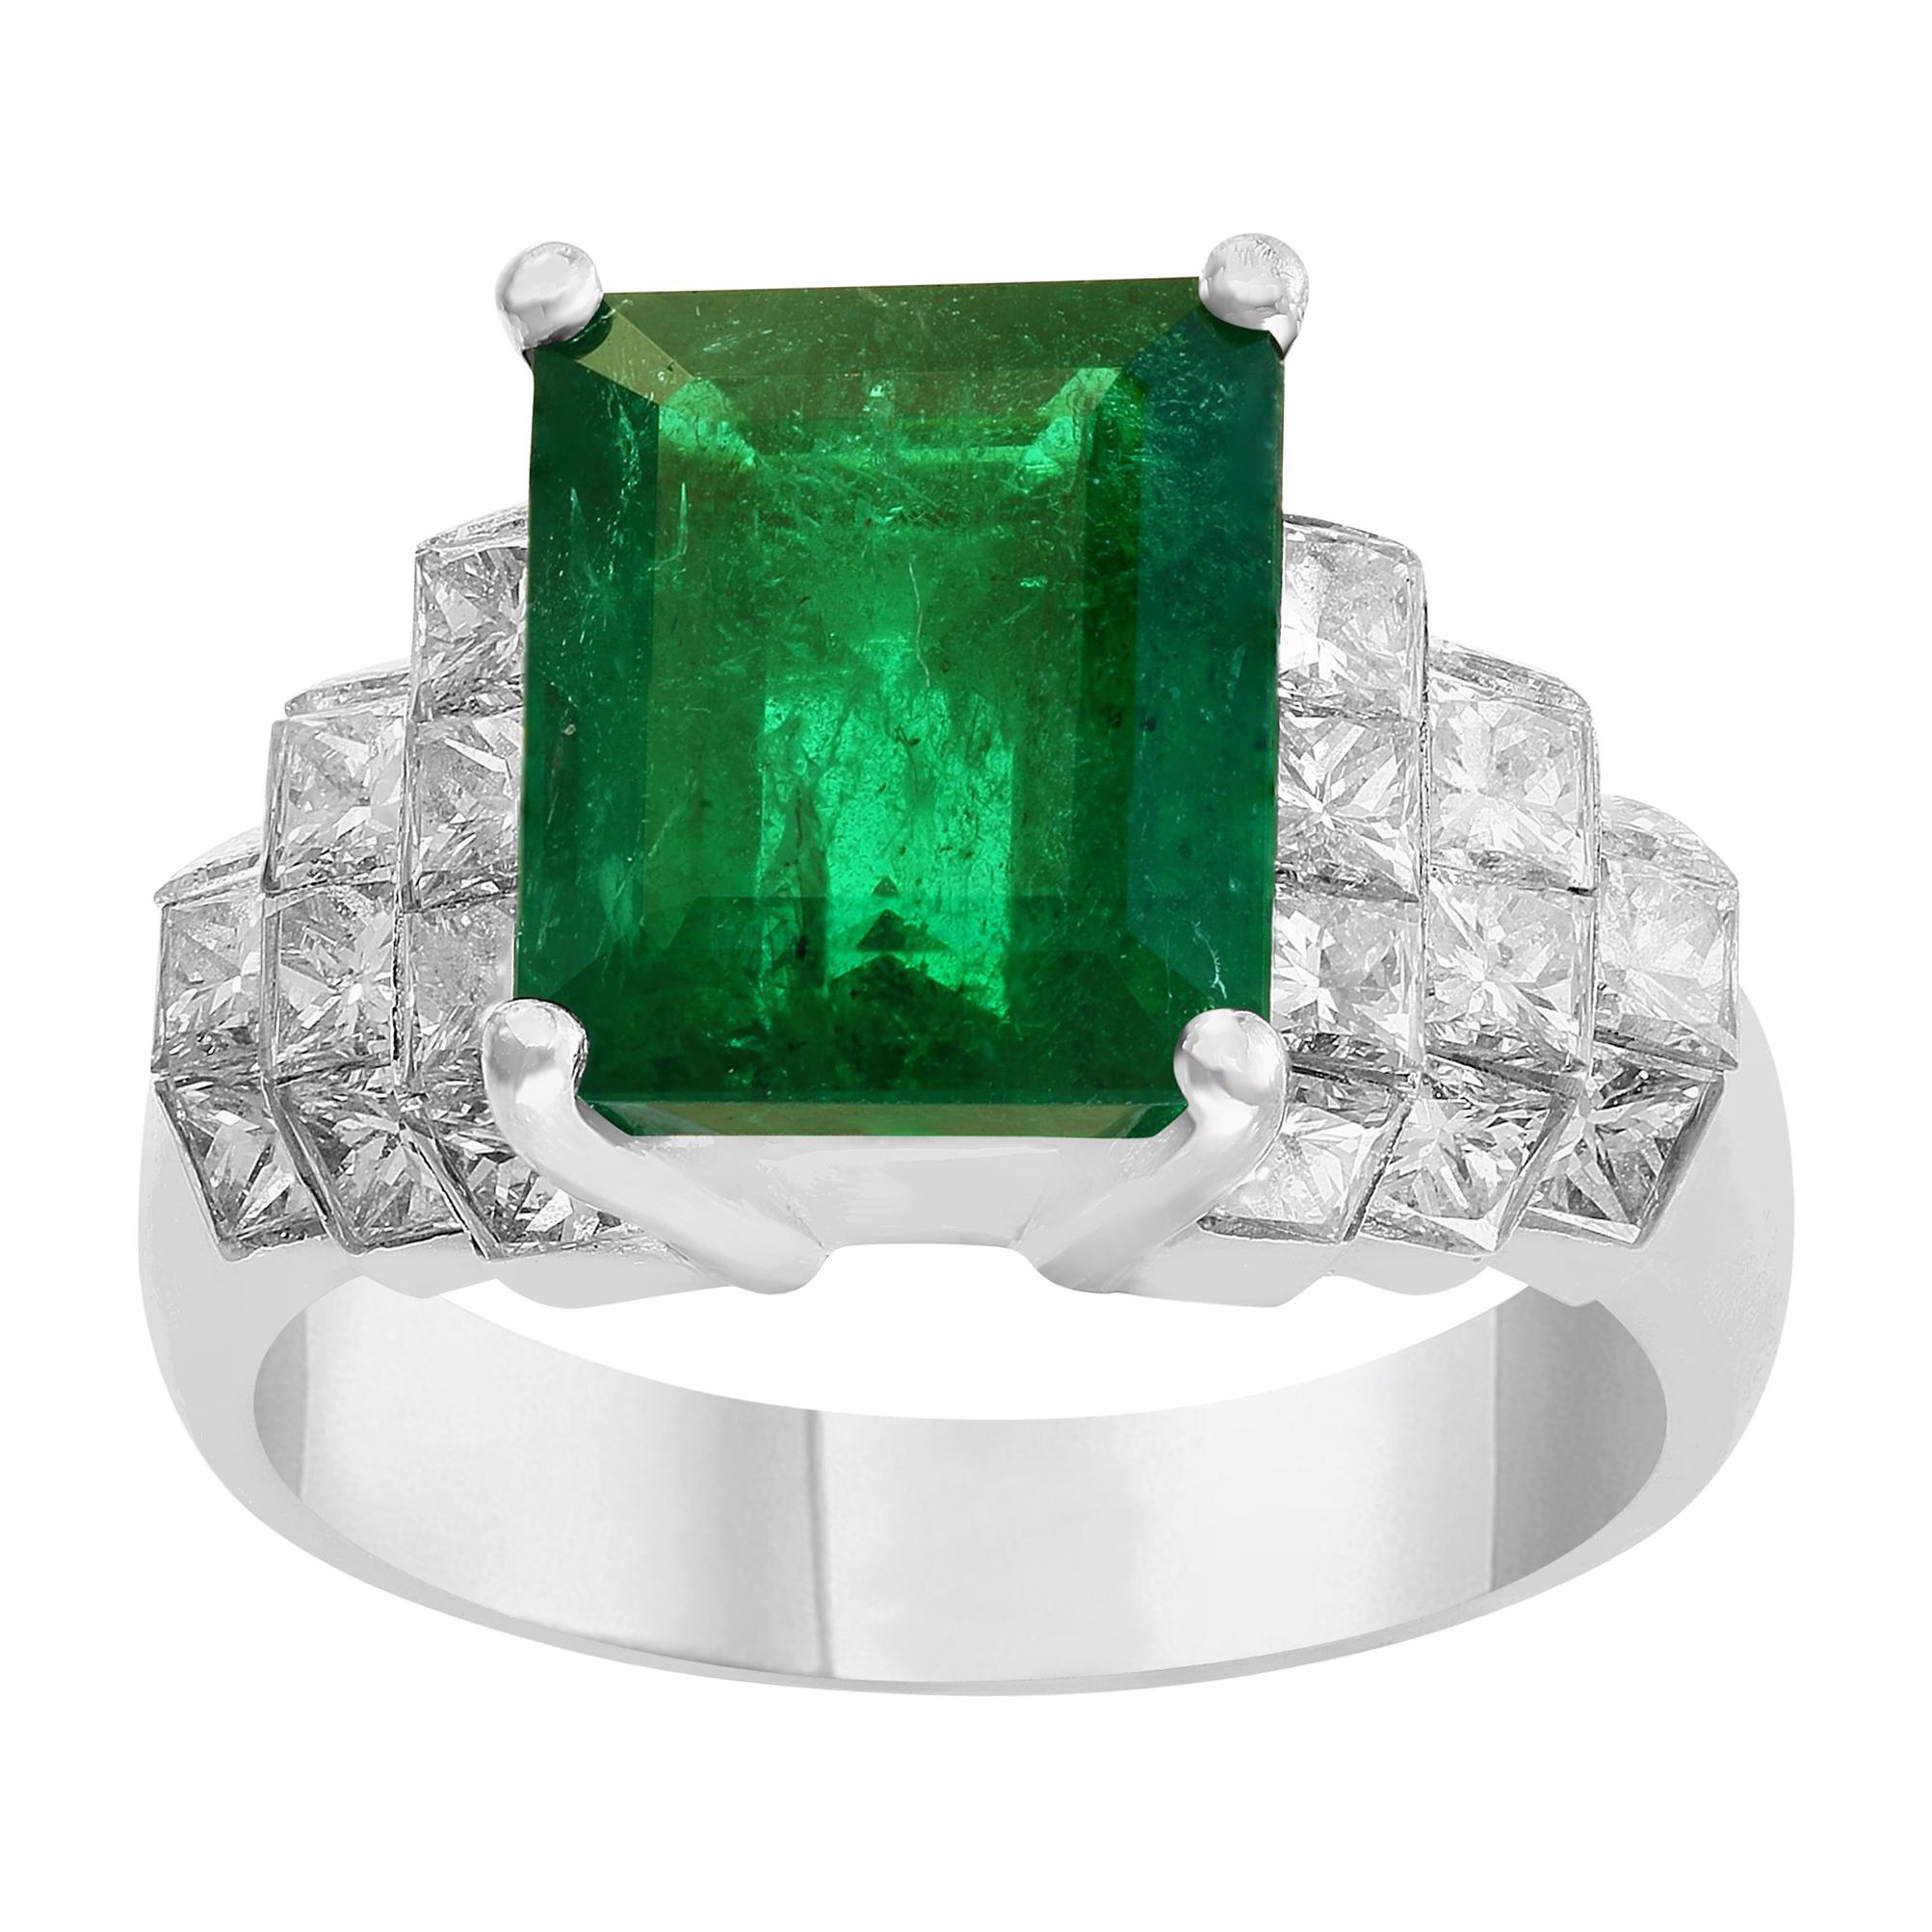 5 Carat Emerald Cut Emerald and Diamond Ring Platinum, Estate